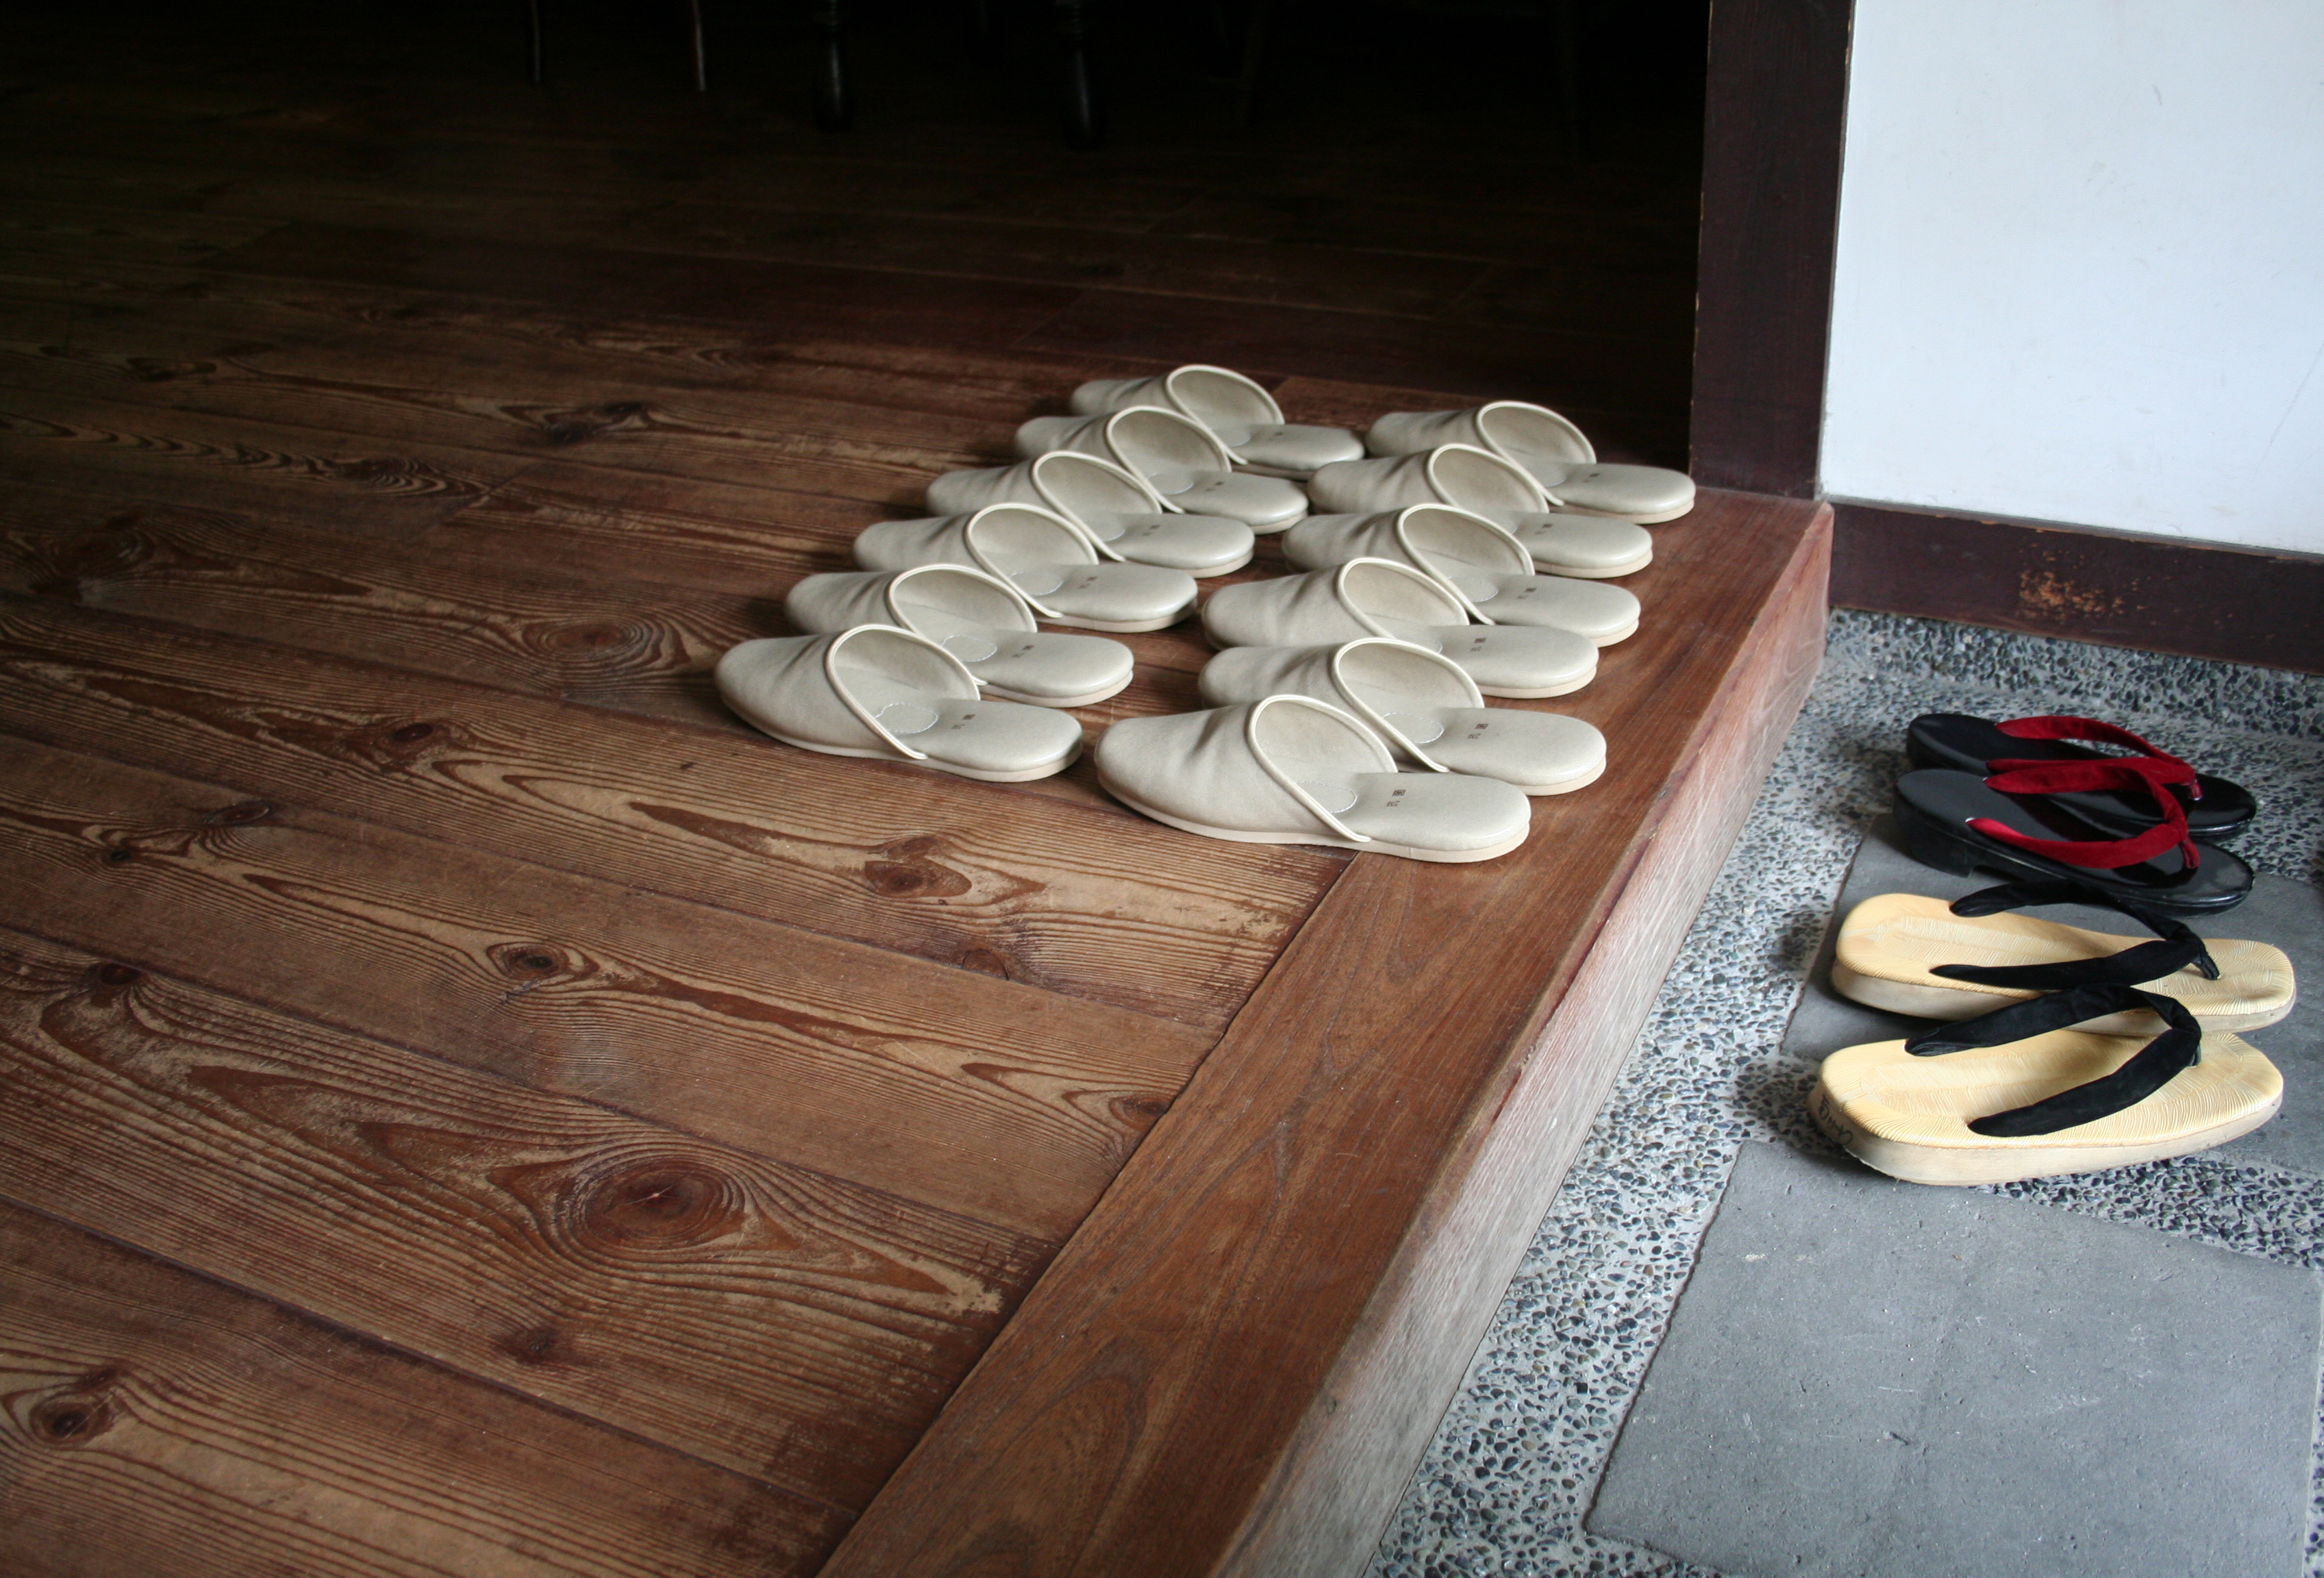 Resultado de imagen de korean shoes for home